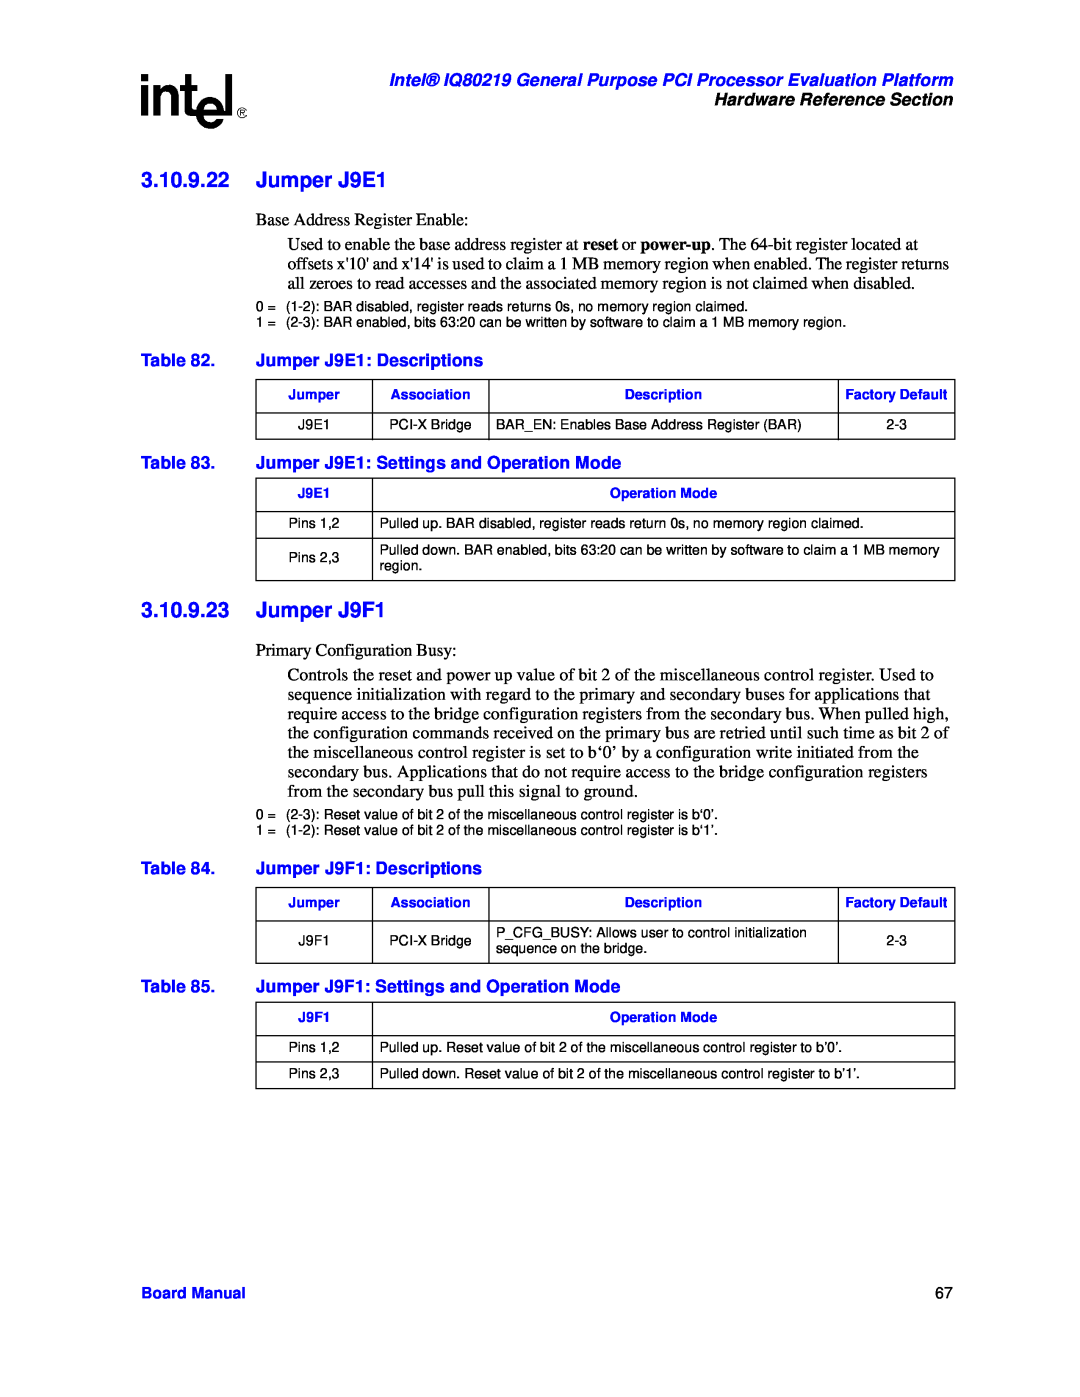 Intel IQ80219 manual Jumper J9E1 Descriptions, Jumper J9E1 Settings and Operation Mode, Jumper J9F1 Descriptions 